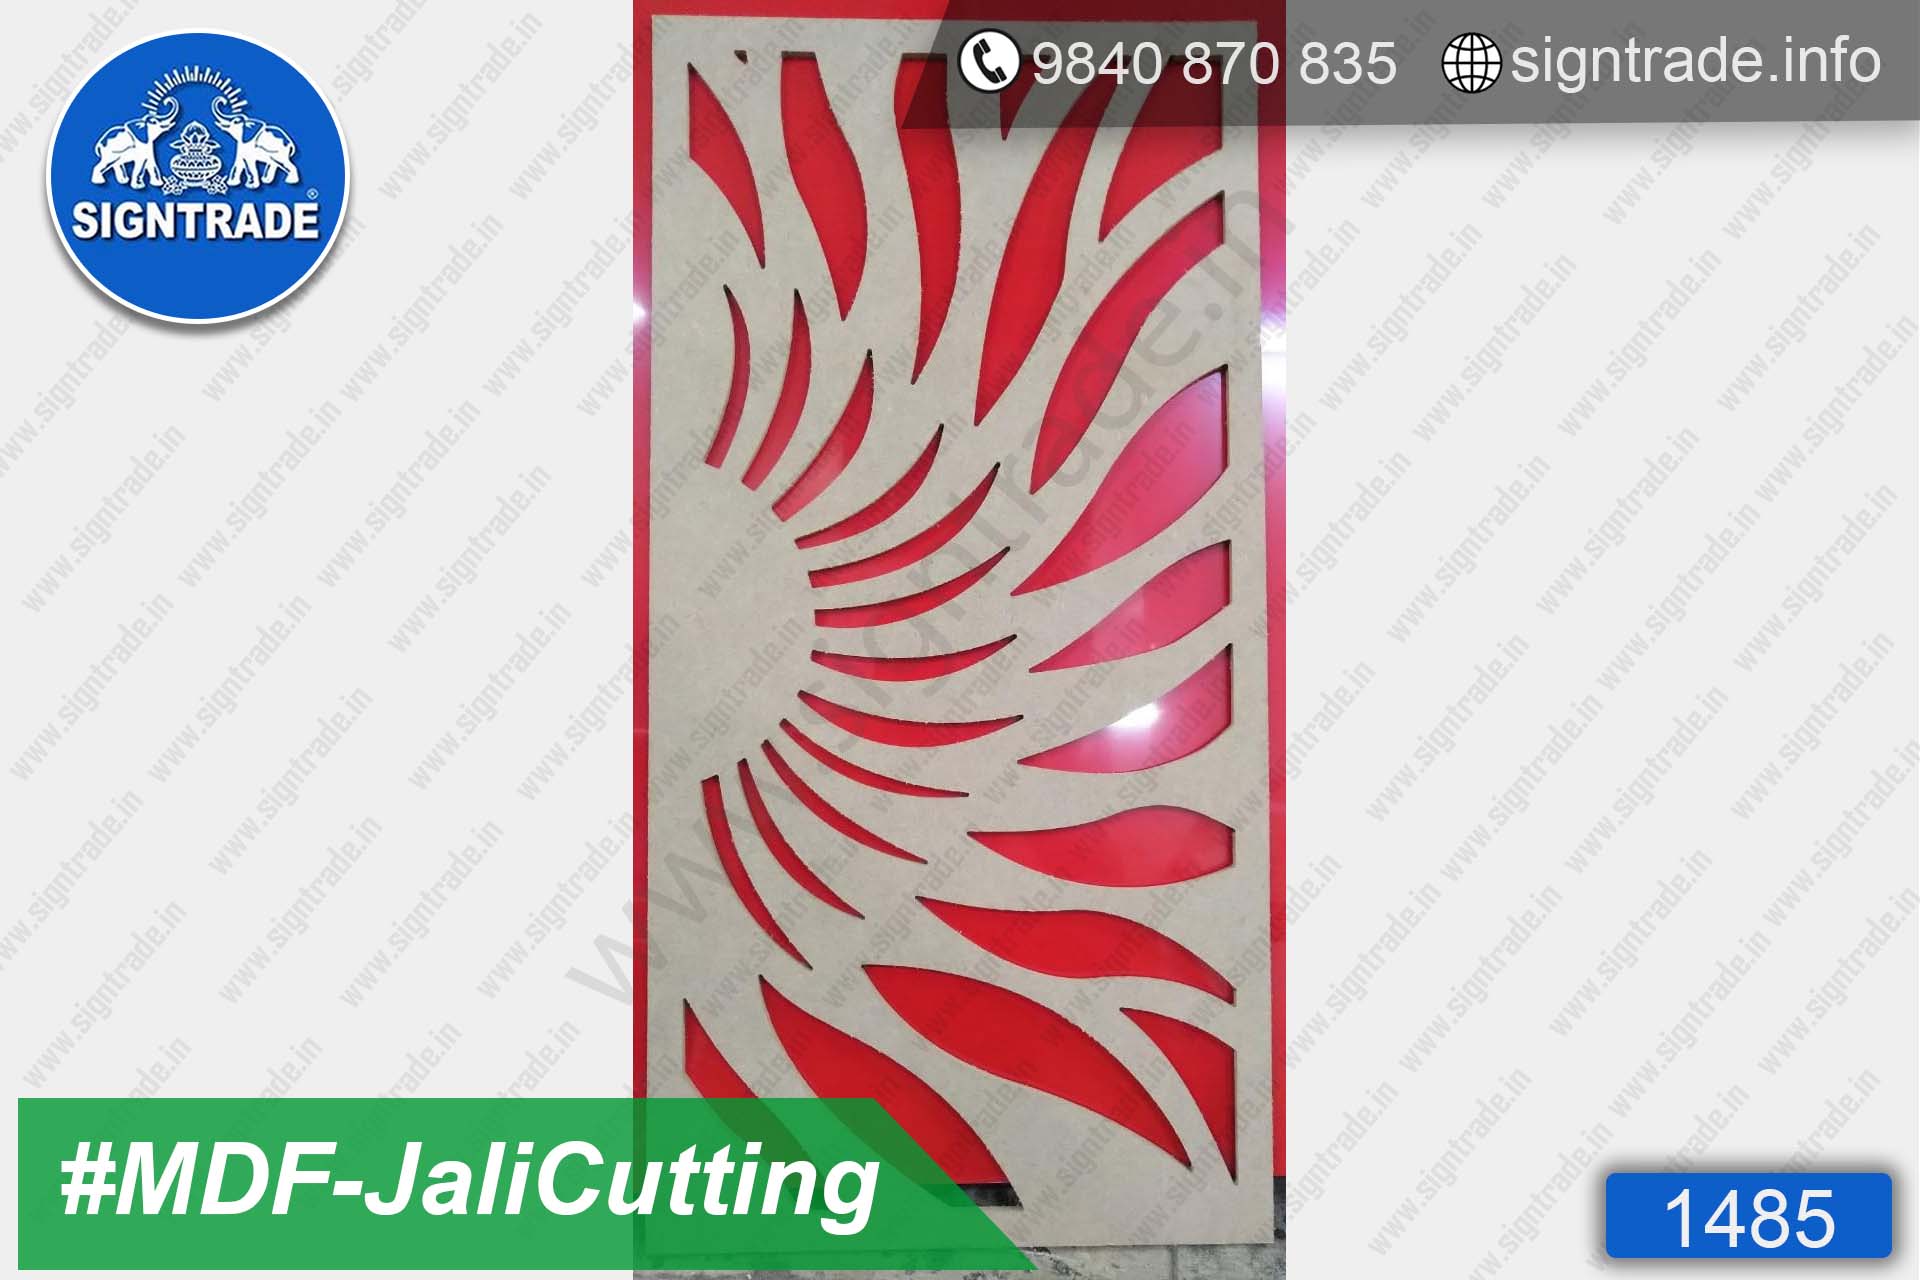 MDF Flower Cutting, MDF Jali Cutting - SIGNTRADE - MDF, Wood CNC Cutting Service in Chennai